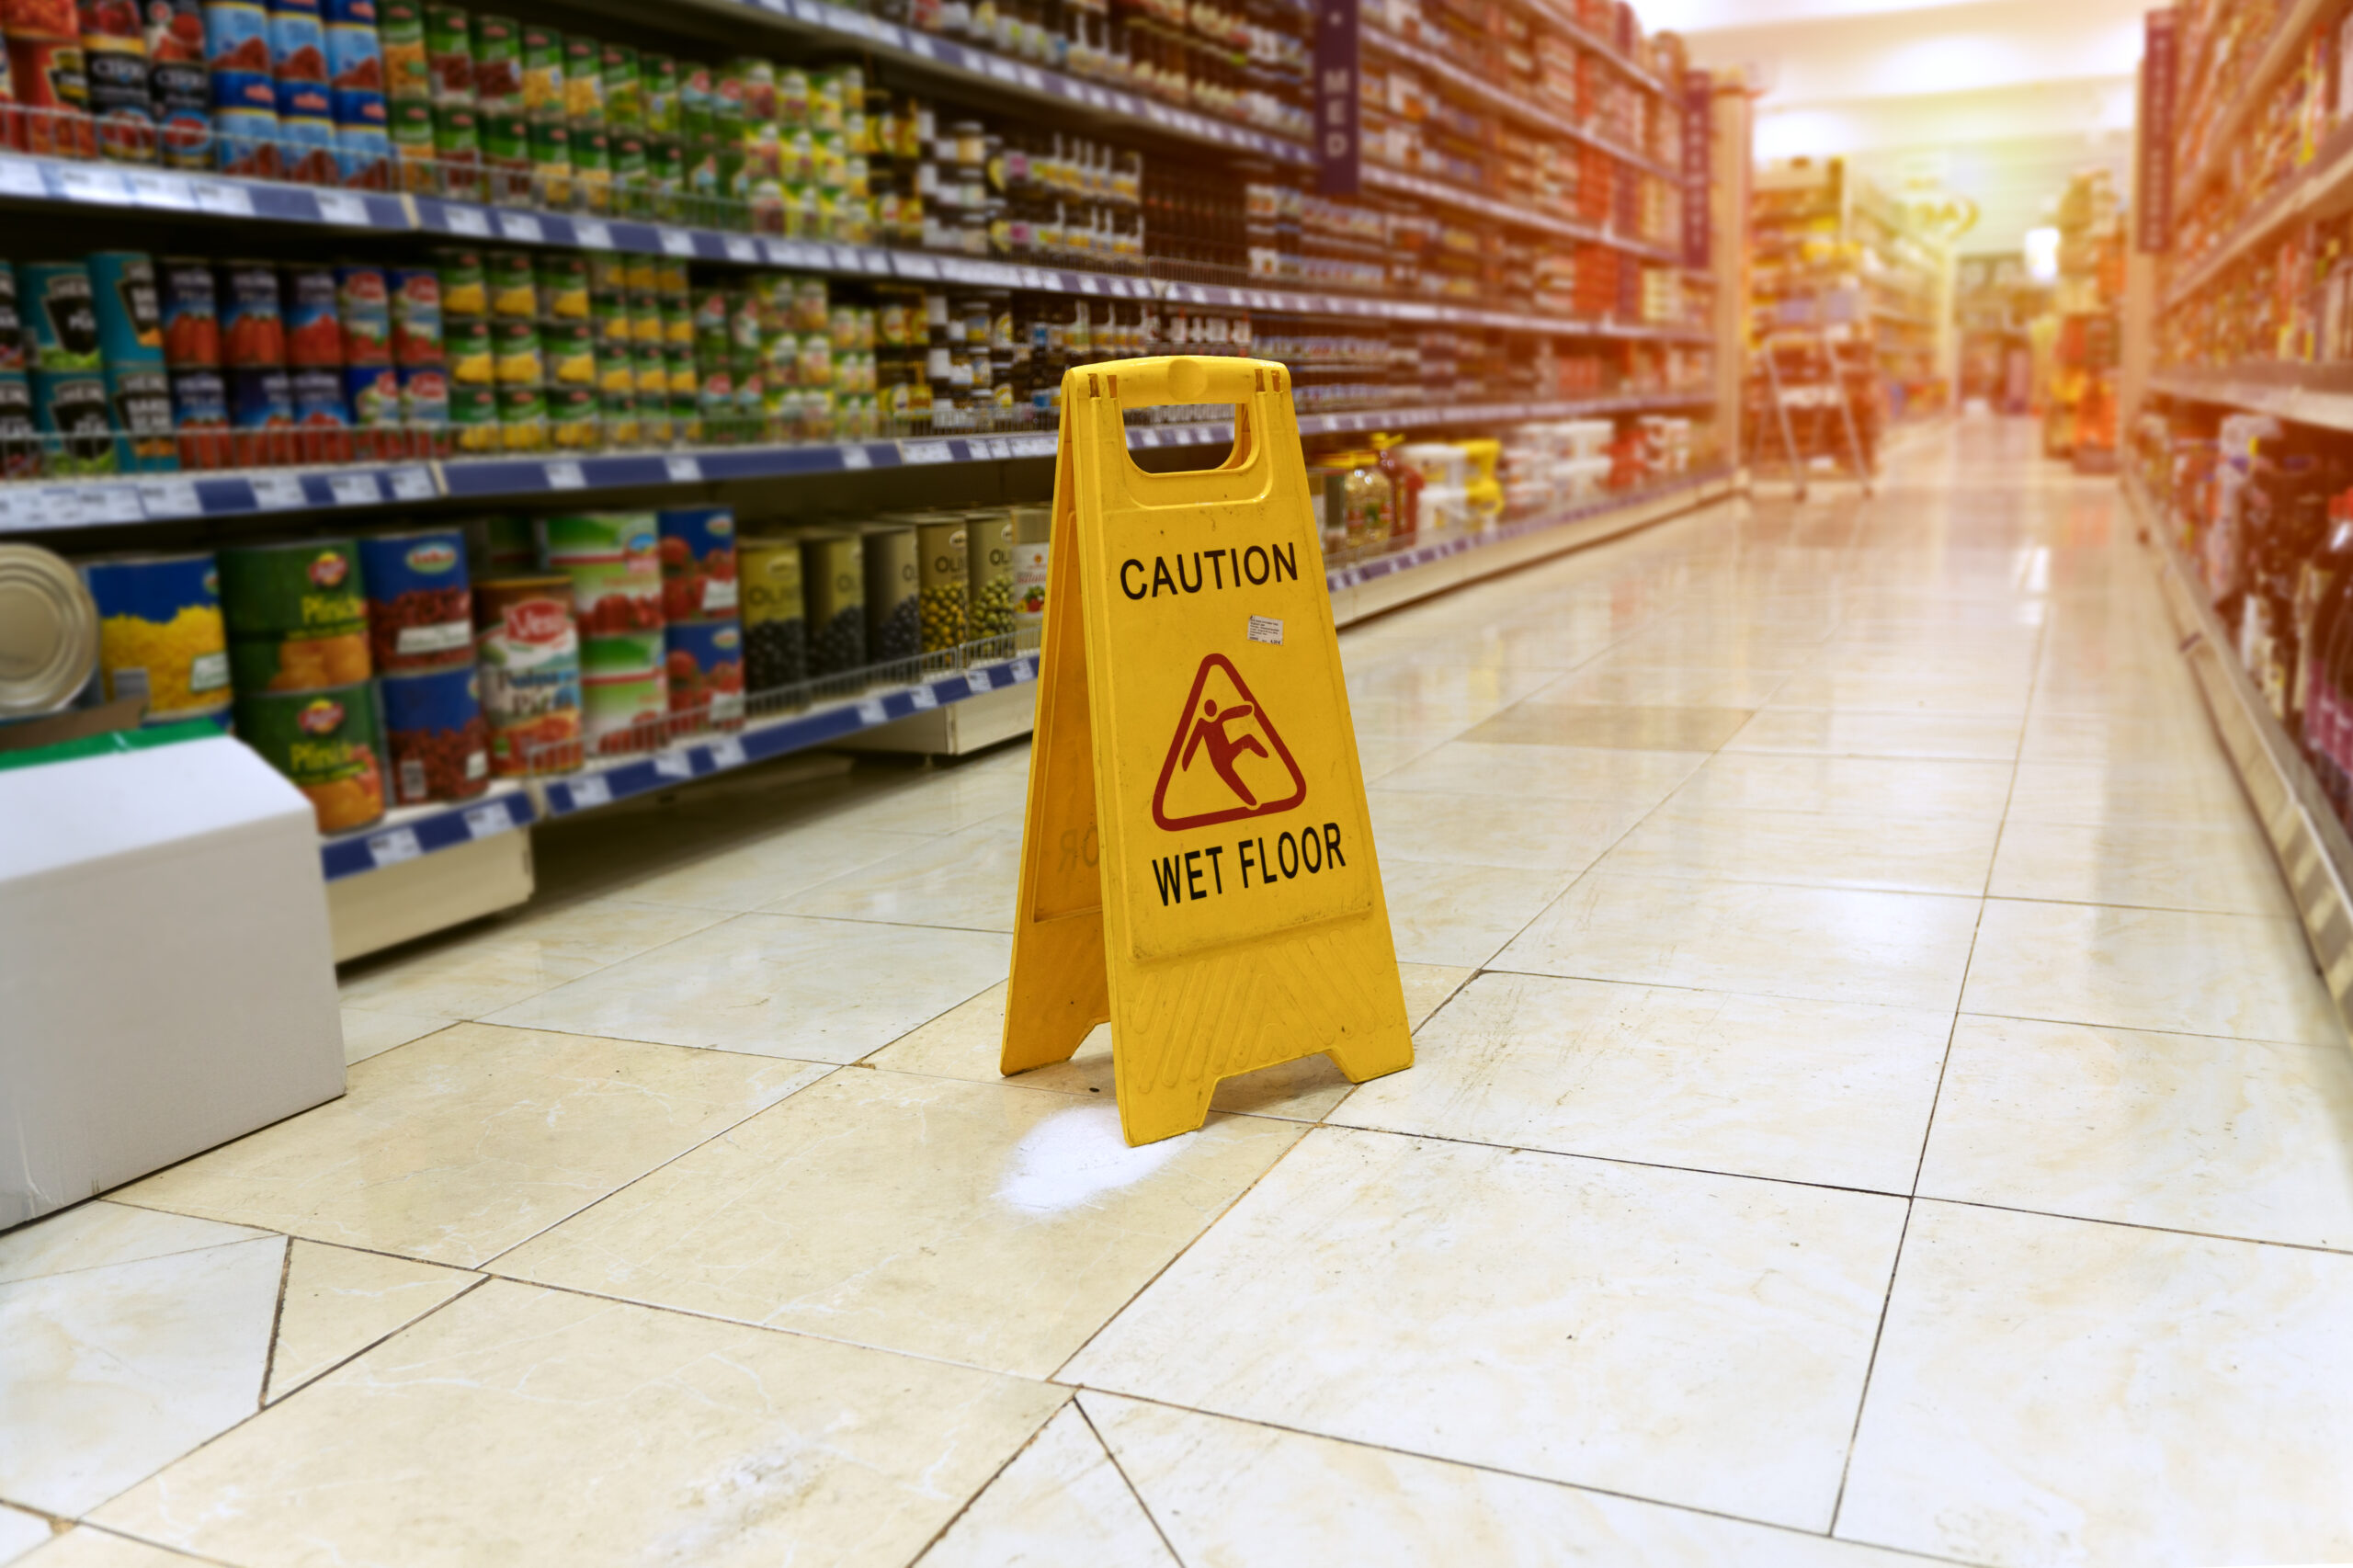 wet floor sign in supermarket aisle